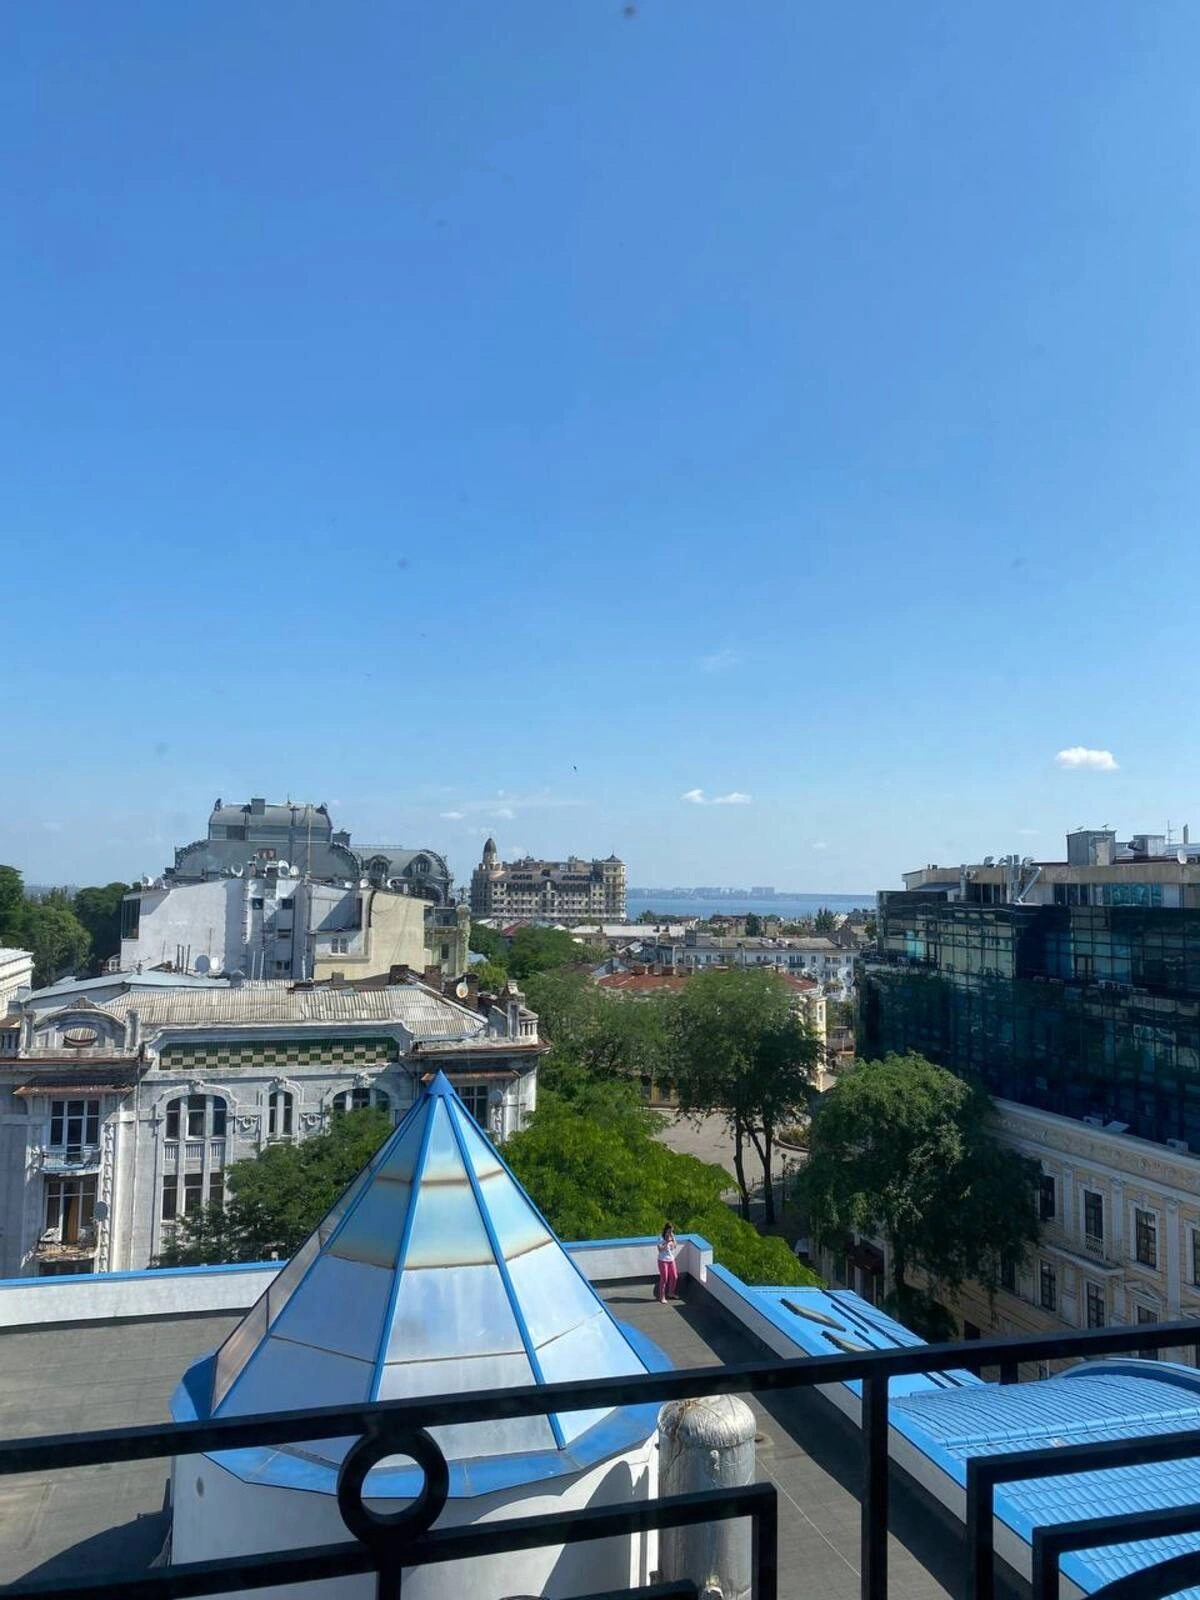 Аренда! Офис с панорамным видом на центр города, Греческая площадь.